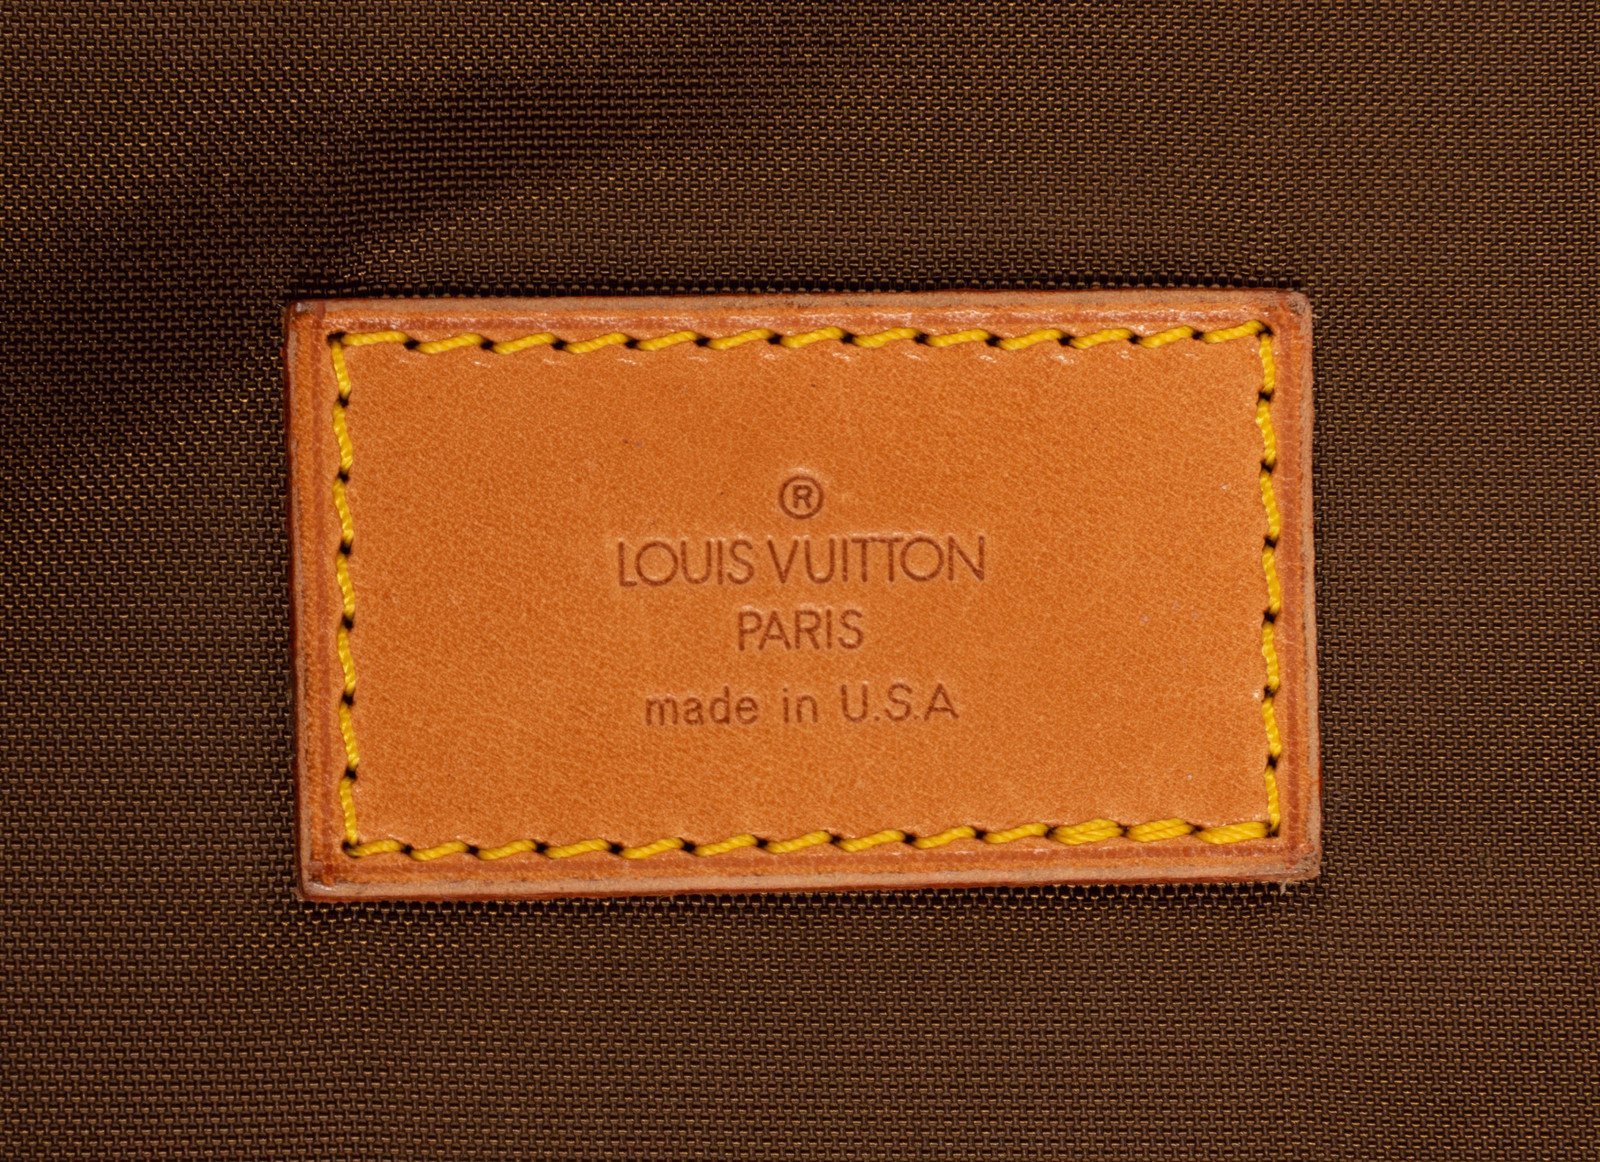 Louis Vuitton VINTAGE Garment Bag Monogram / Garment Carrier AUTHENTIC 1980s